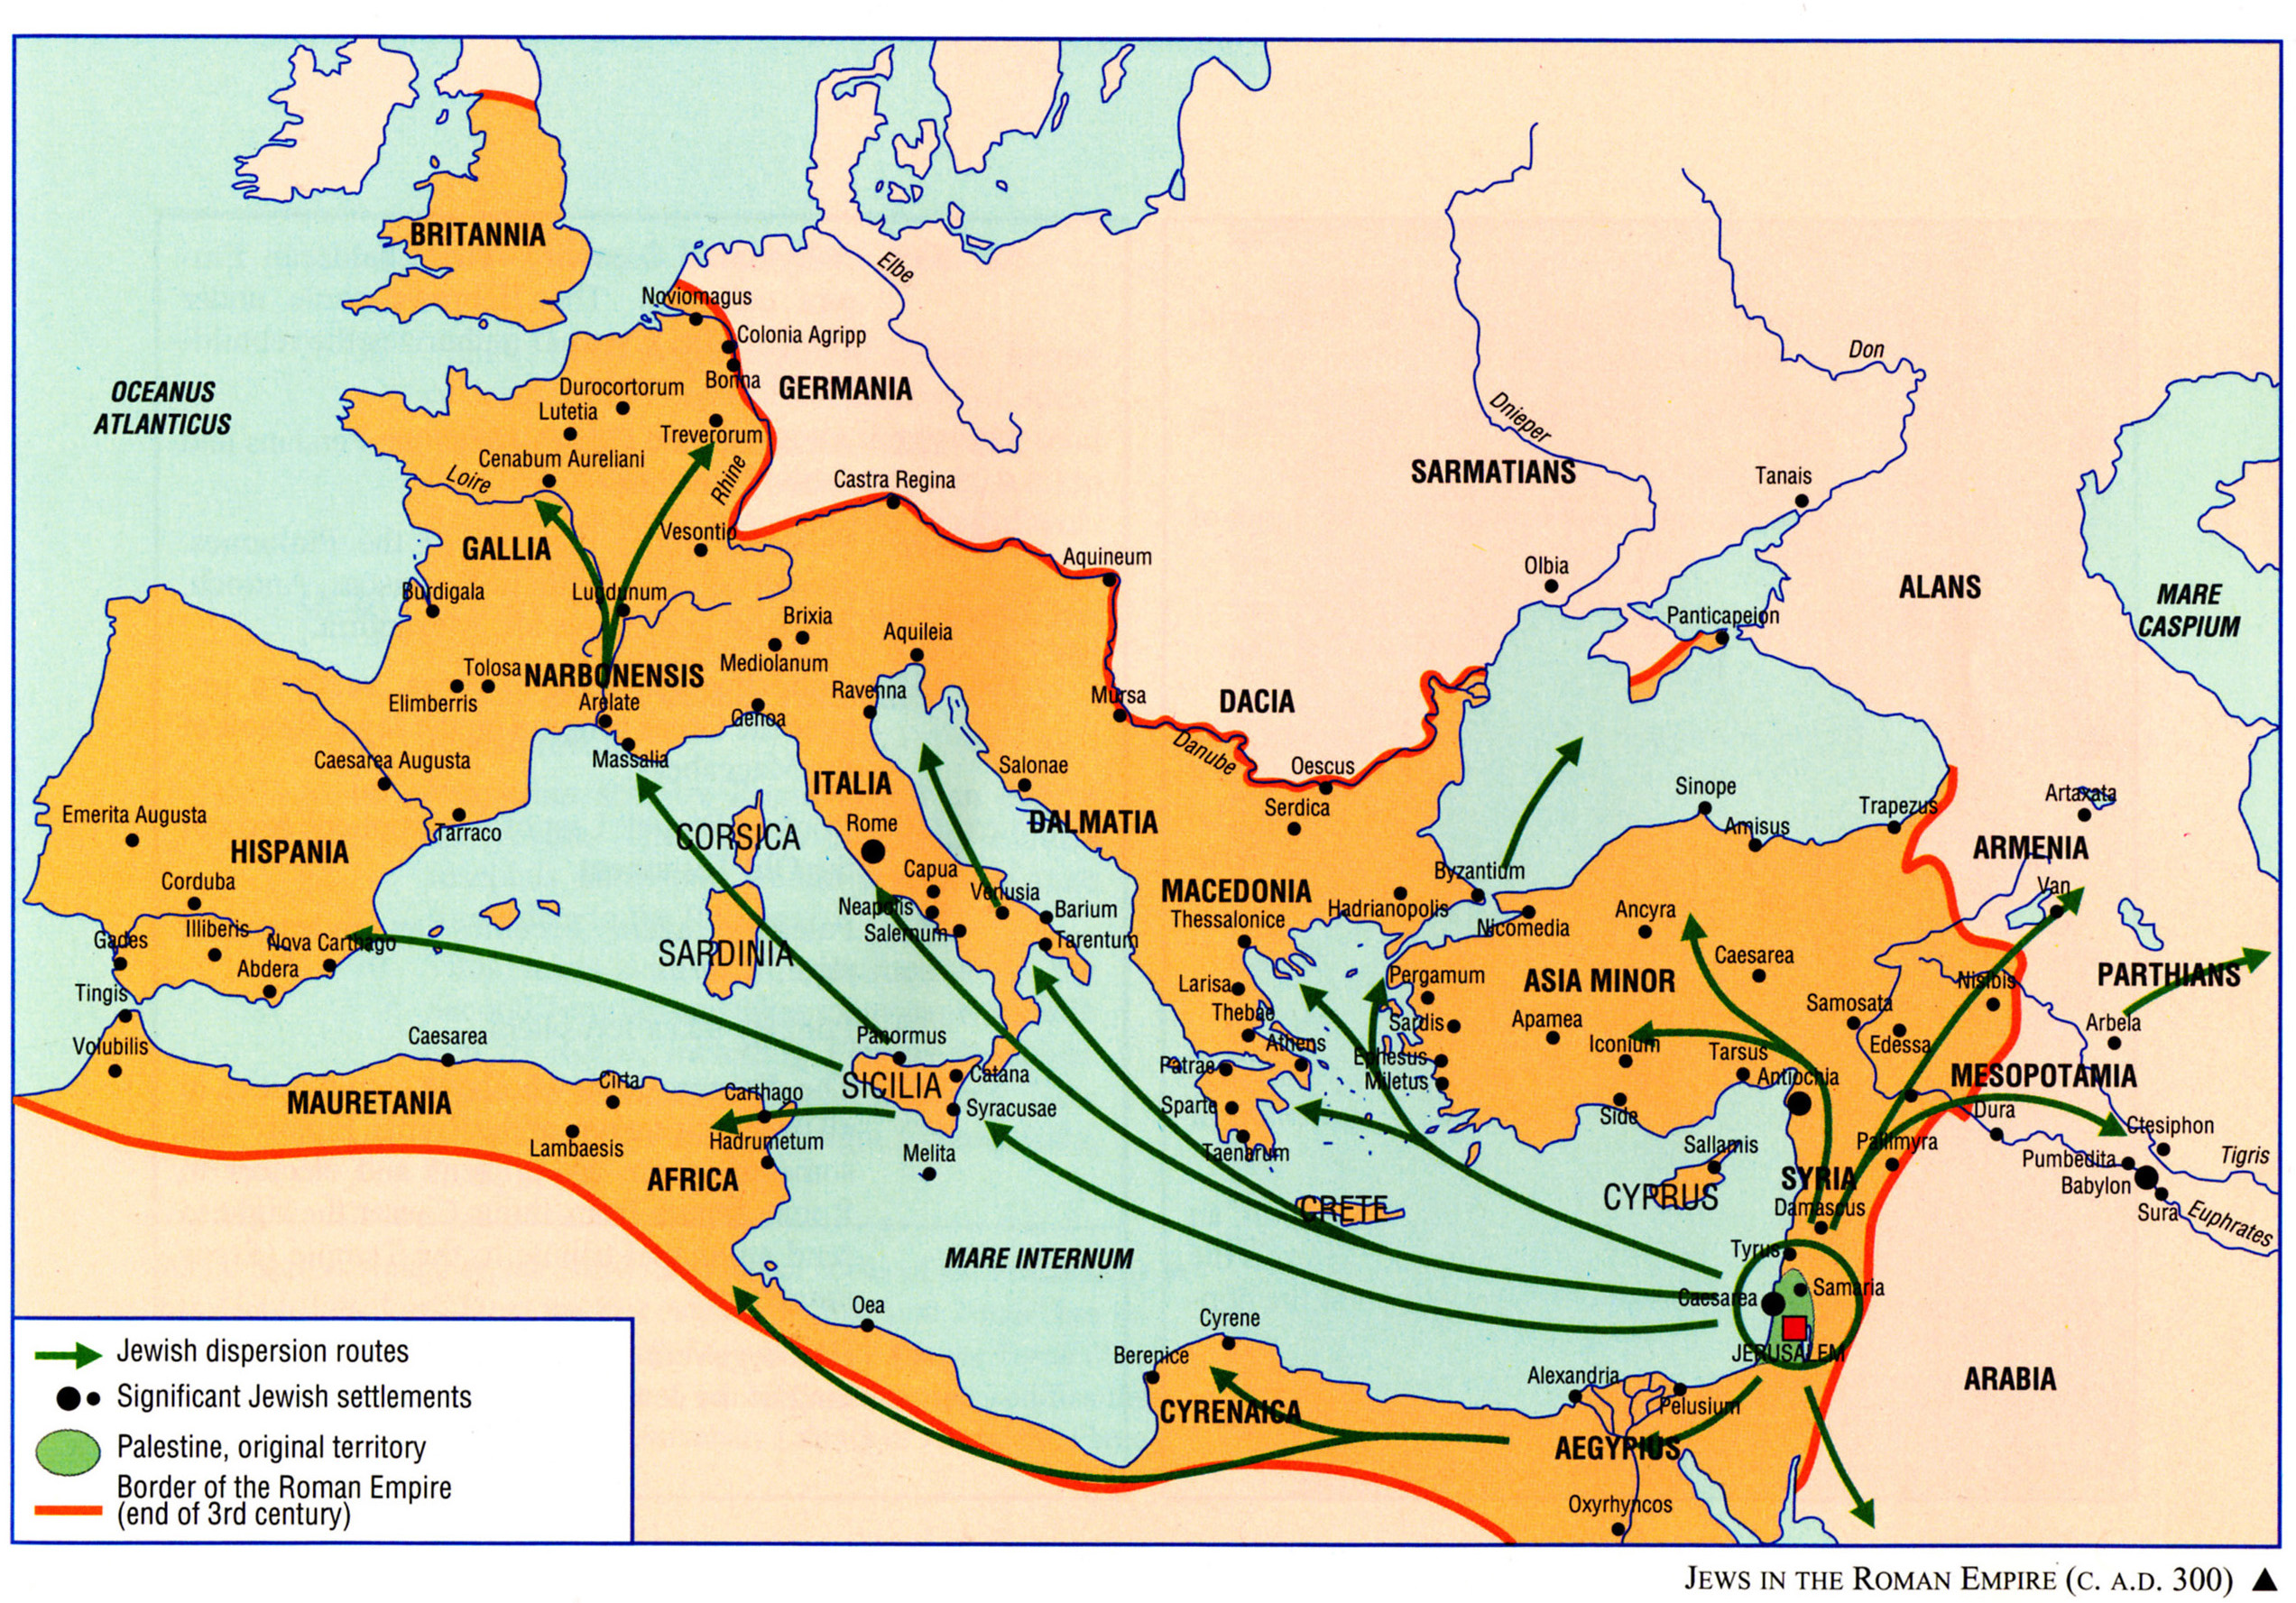 MG Jews In The Roman Empire C. A.D. 300 